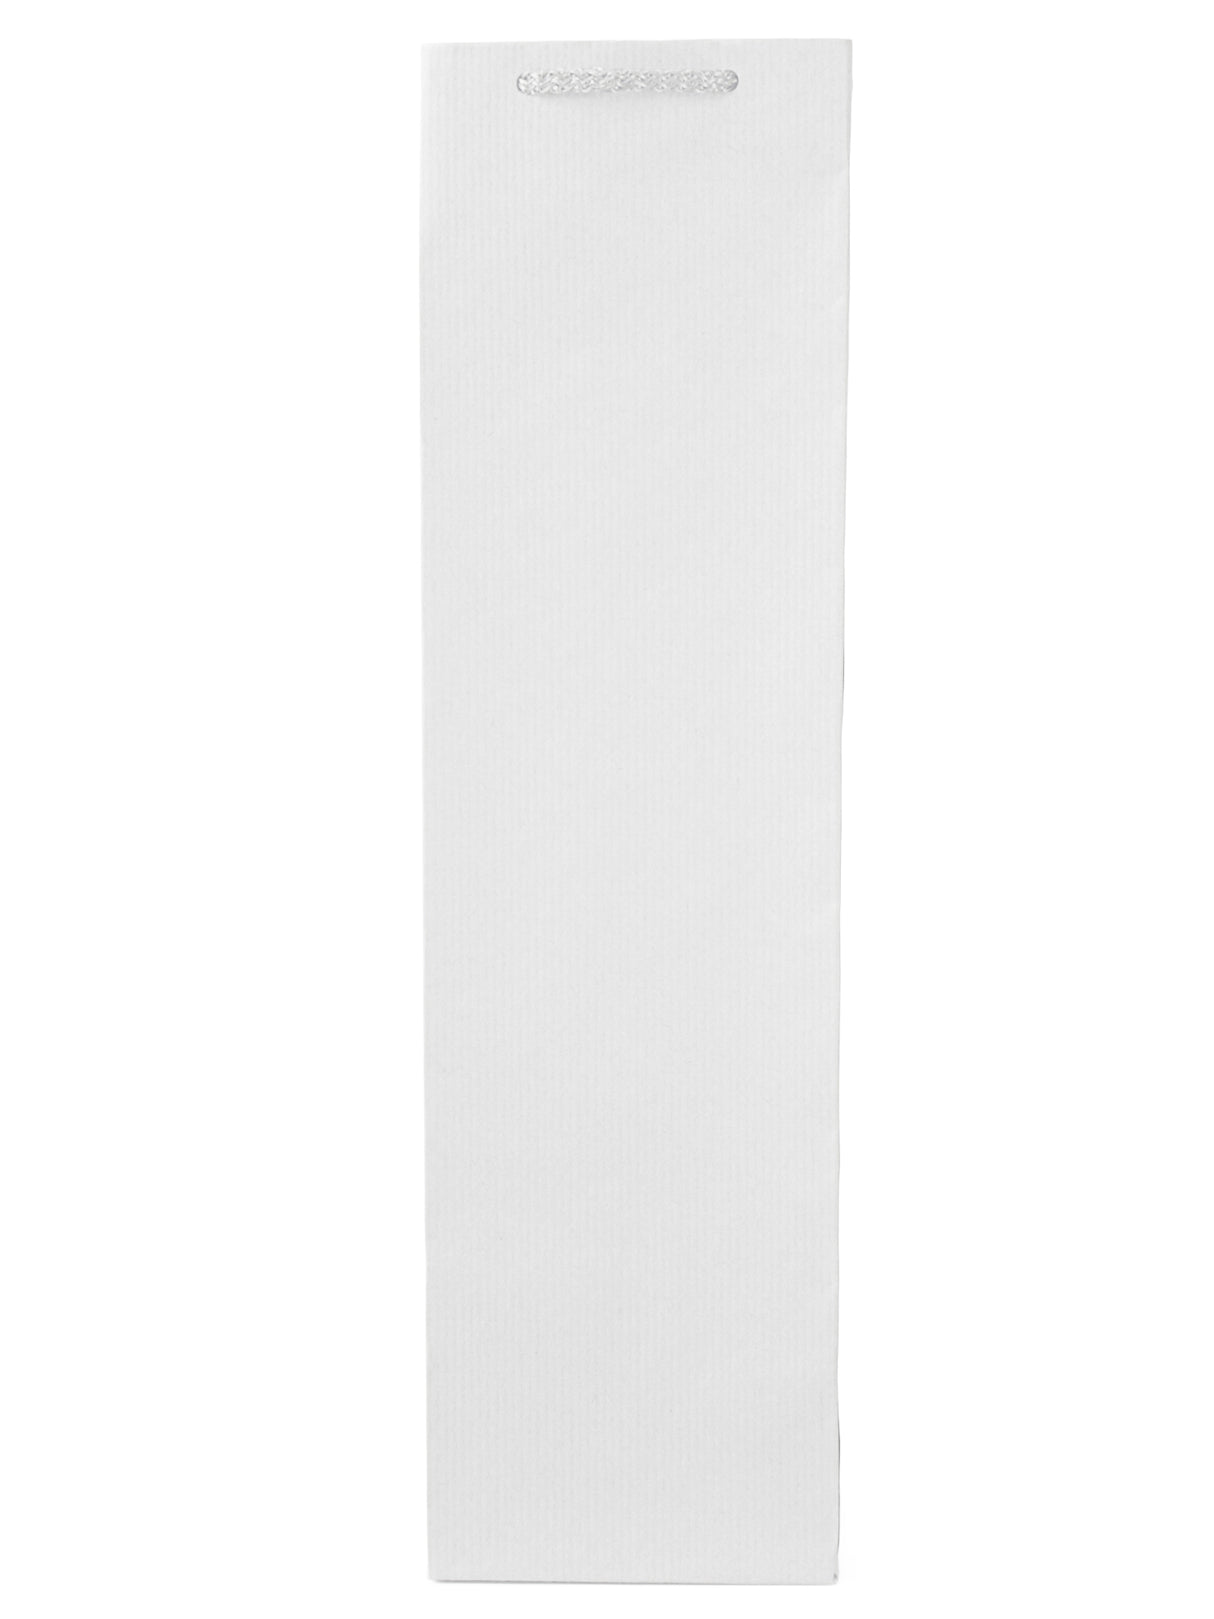 Torba papierowa ECO prestige - BIAŁA - 110x90x400mm